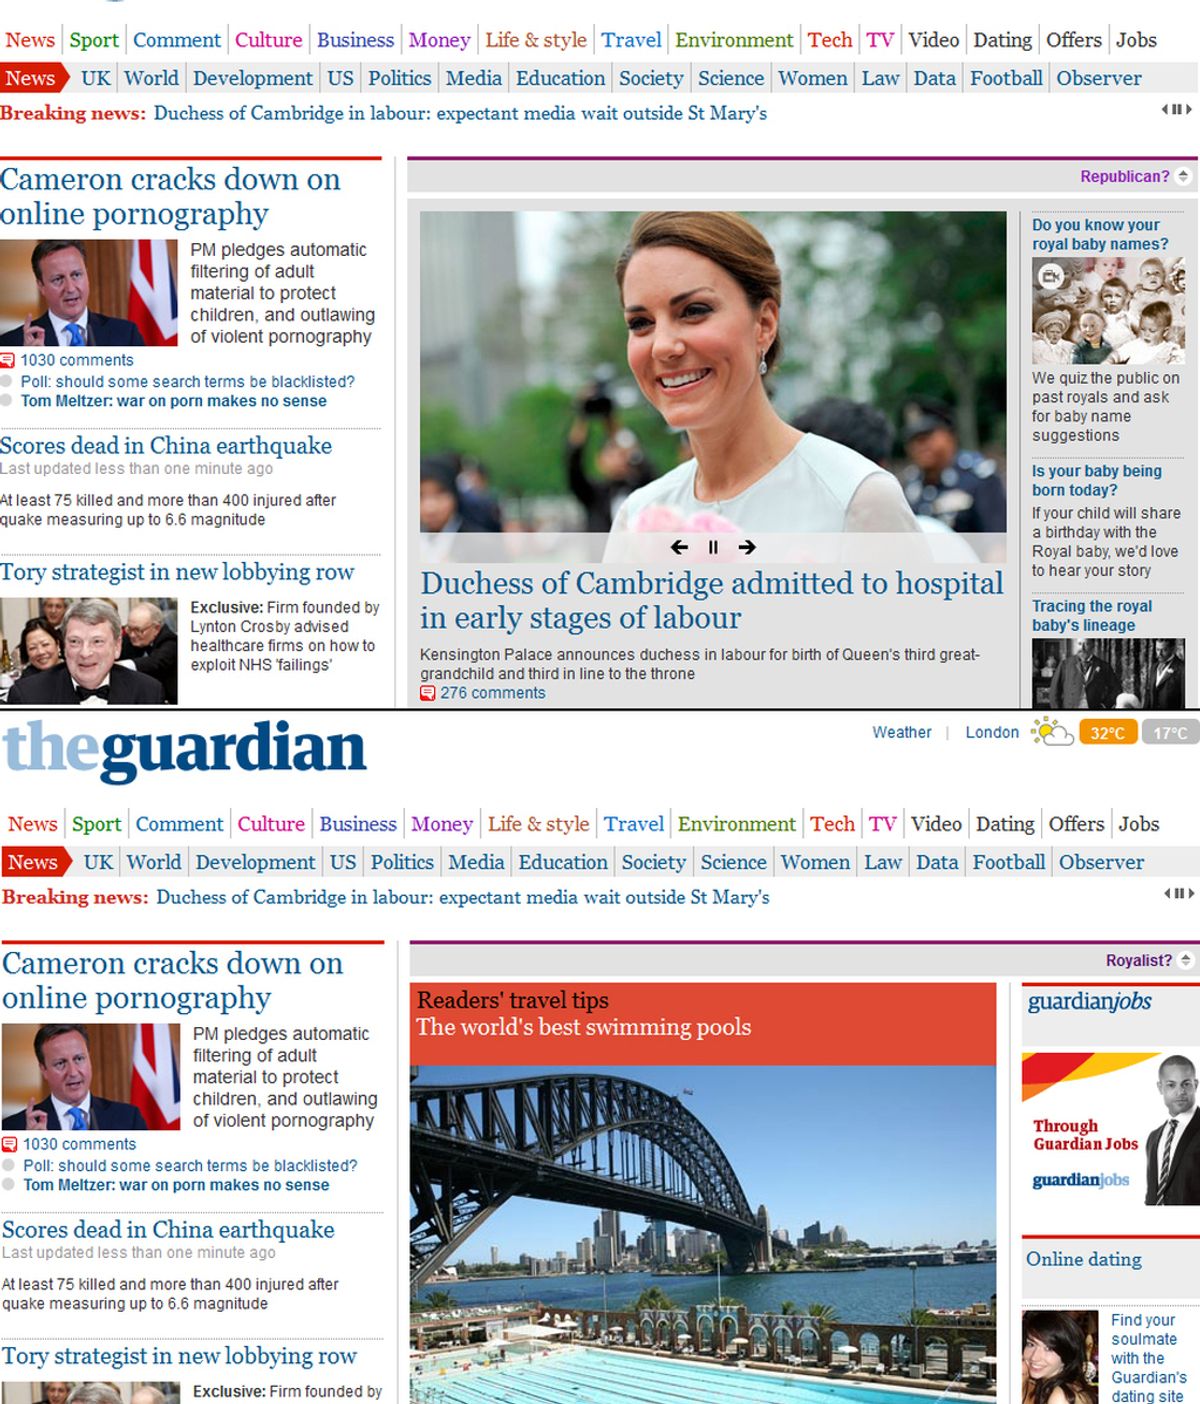 Montaje The Guardian, republica, monarquía